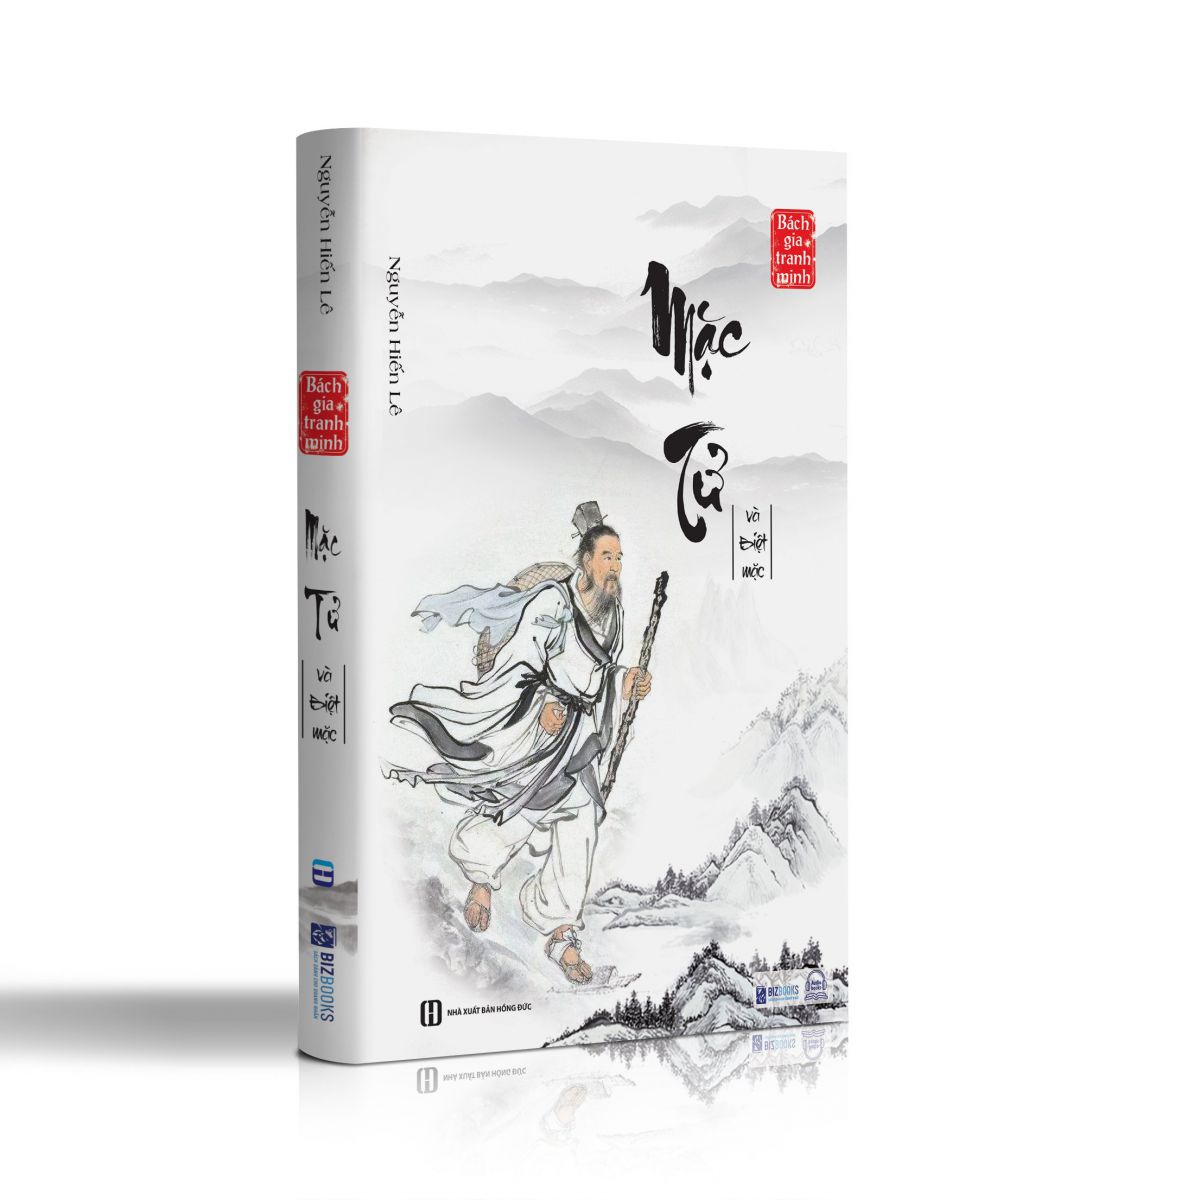 Bách  gia tranh minh - Bộ 8 cuốn sách quý hiếm của Nguyễn Hiến Lê 5 